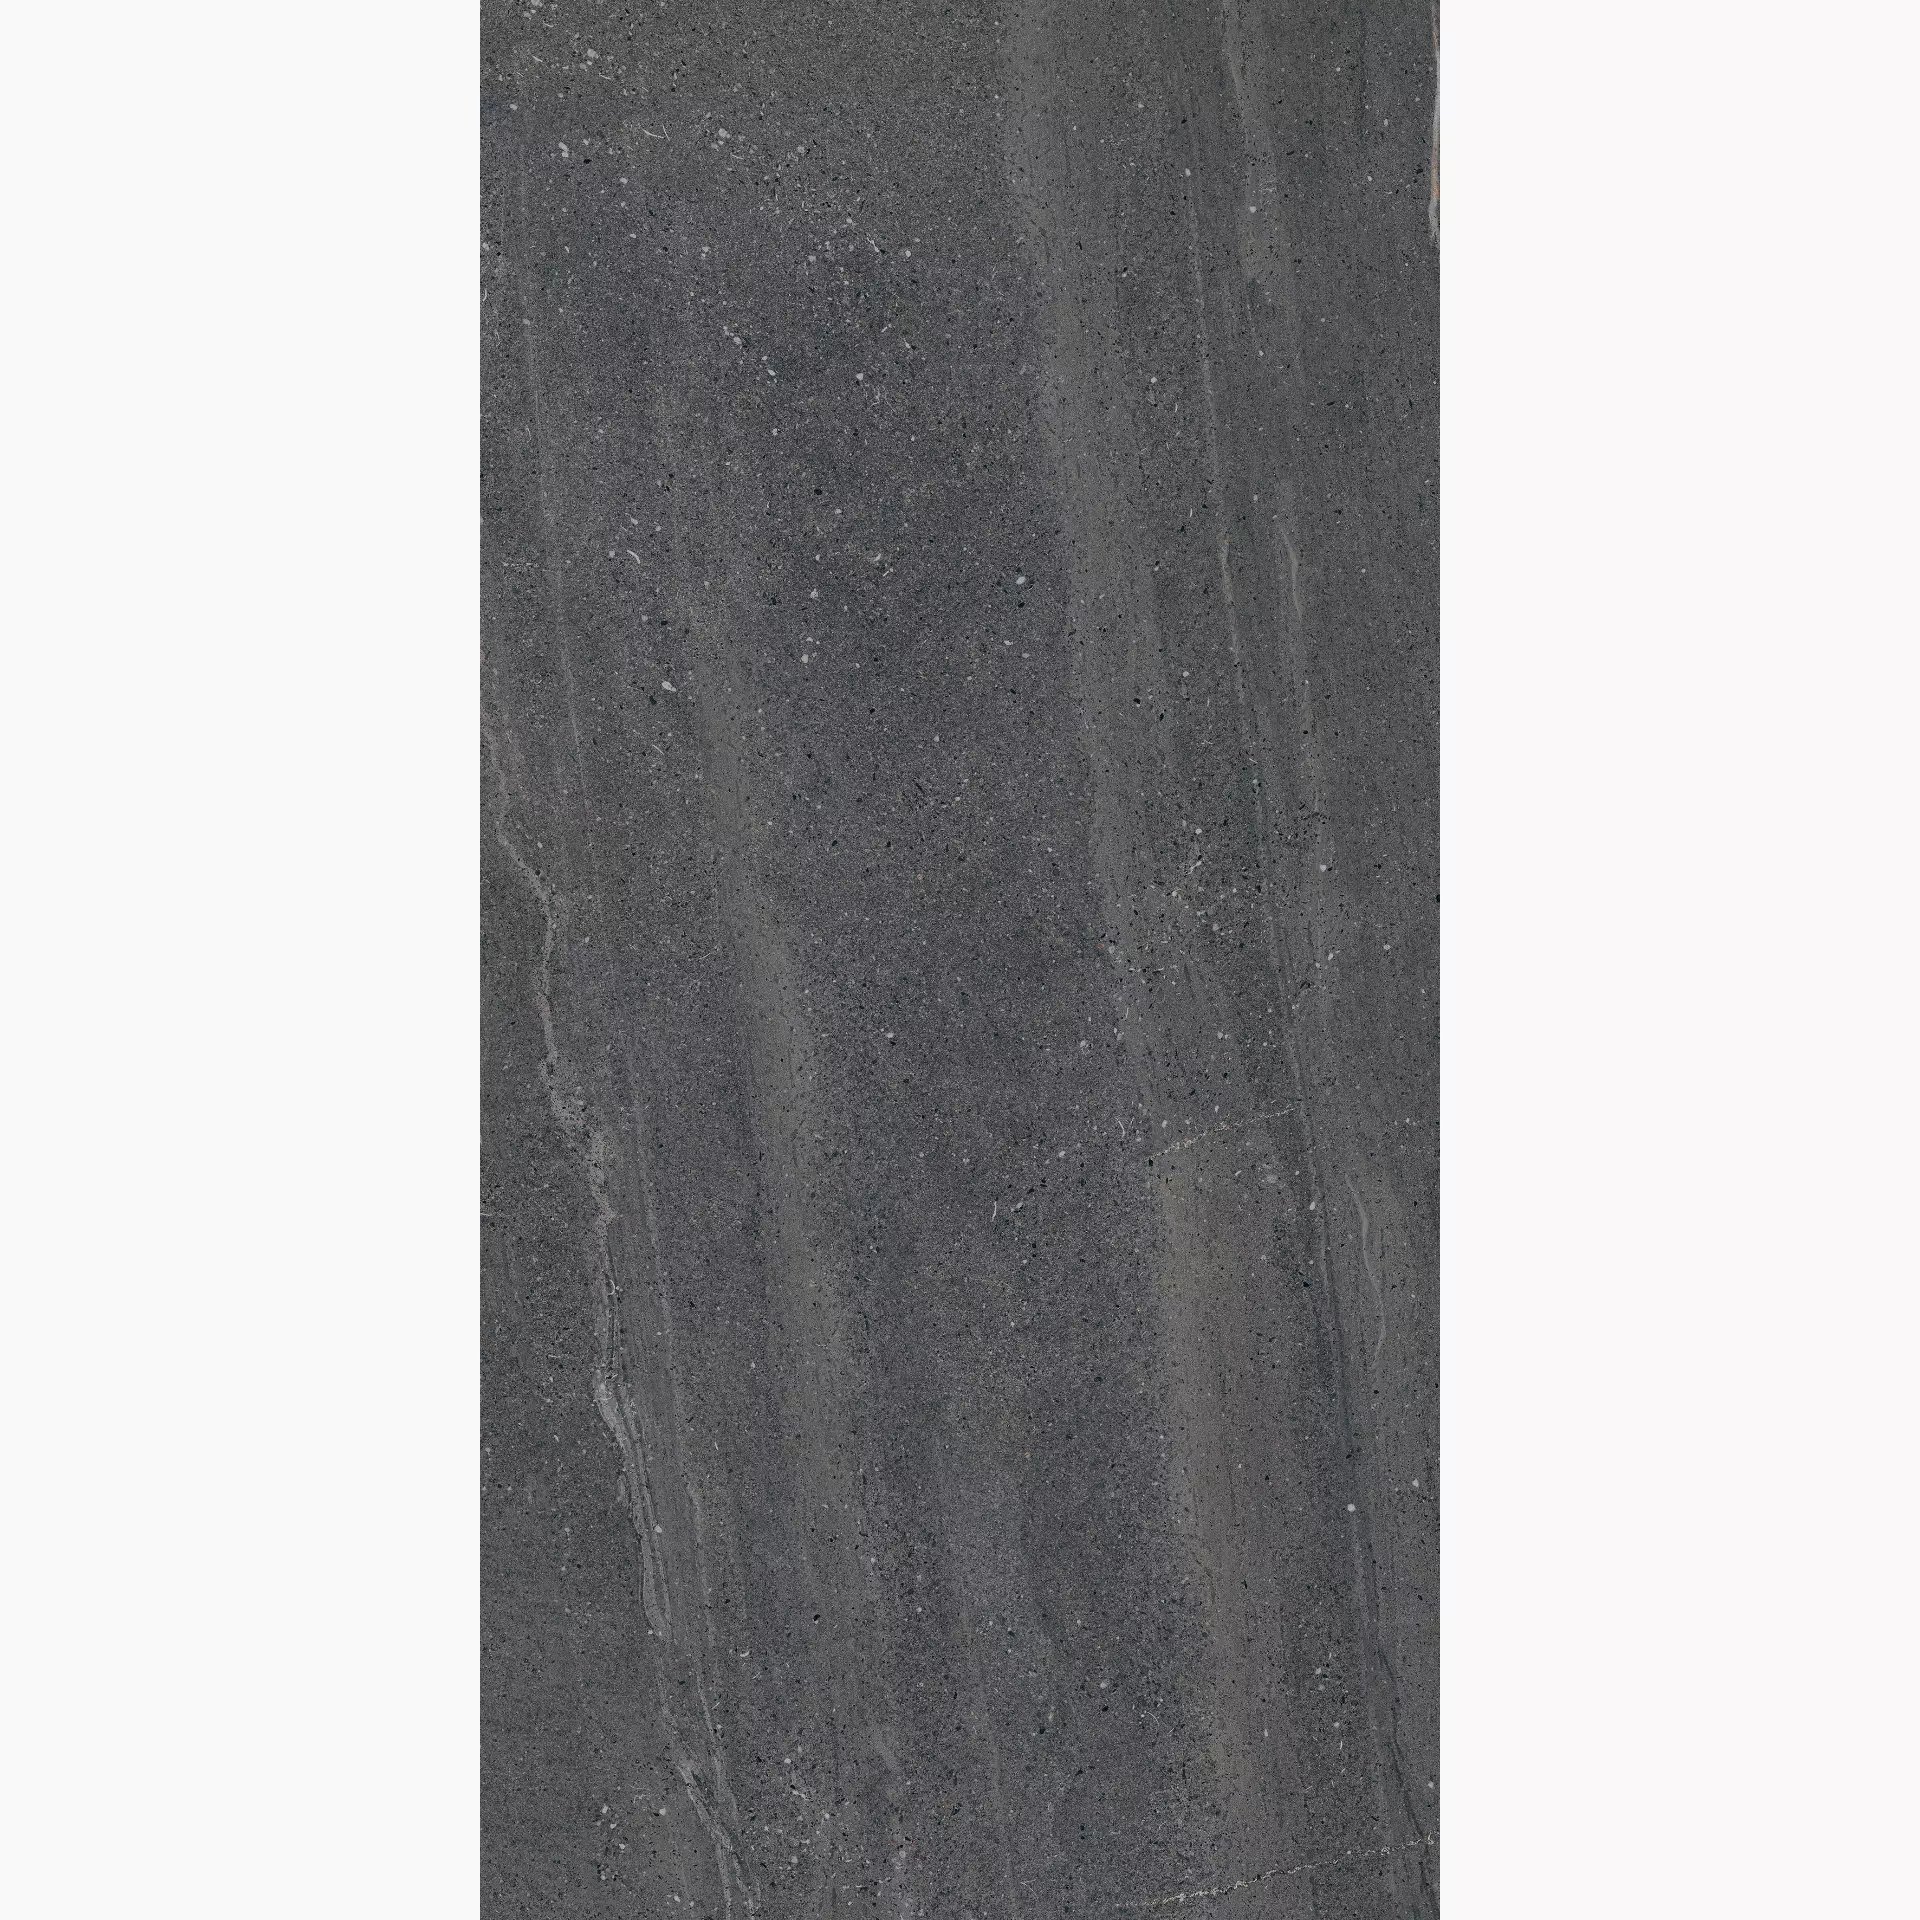 Flaviker Rockin Lava Grip PF60010144 60x120cm rectified 8,5mm